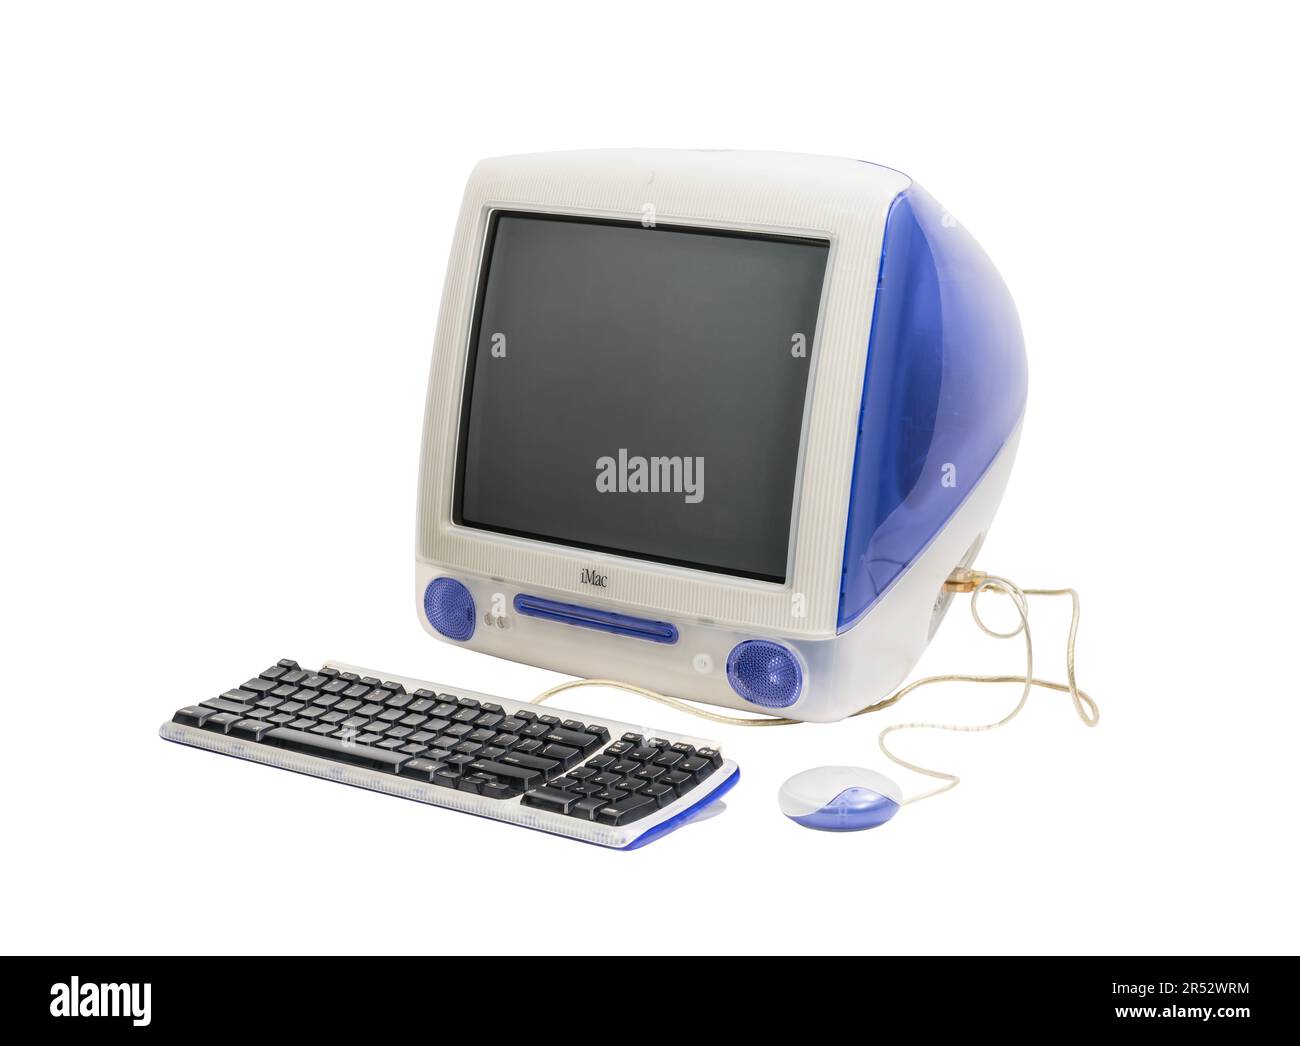 Los Angeles, Kalifornien, USA - 29. Mai 2023: Redaktionelles Foto eines klassischen Apple iMac G3-Desktop-Computers mit Tastatur und Maus. Stockfoto